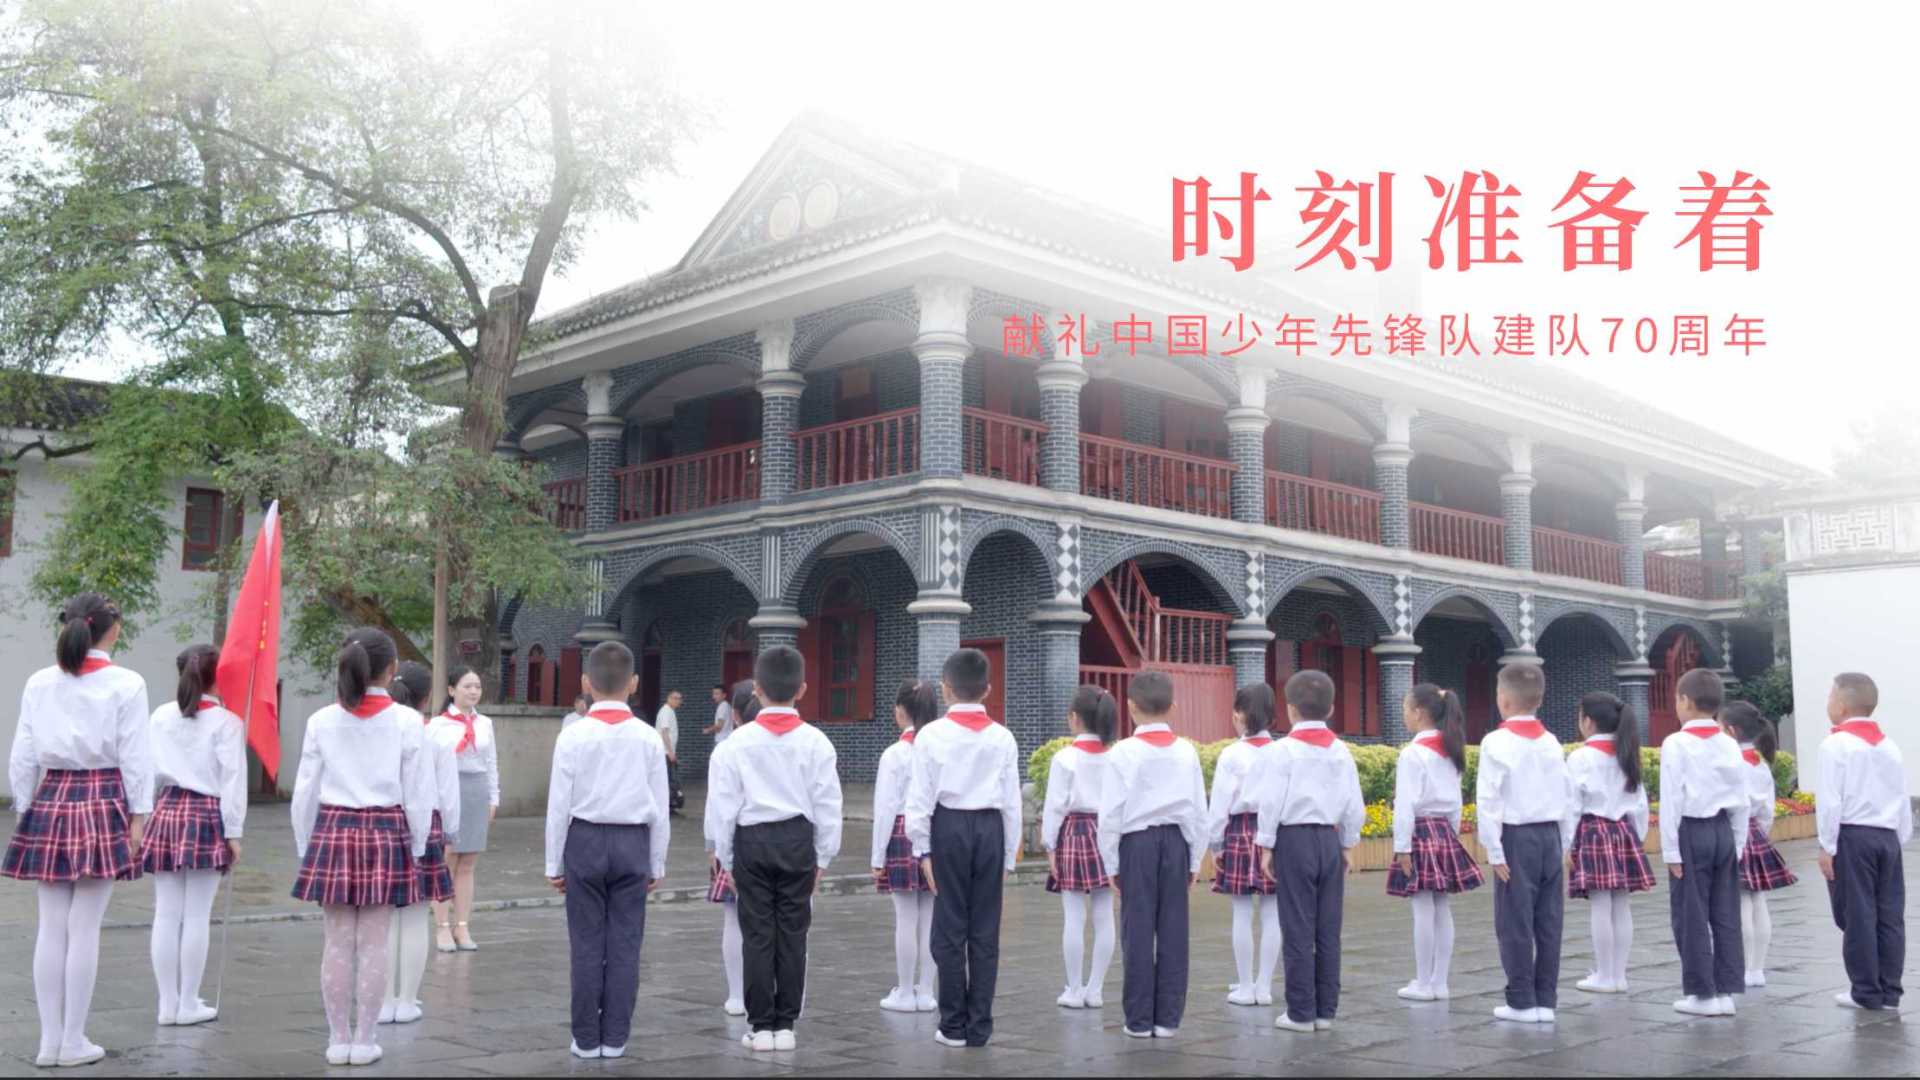 时刻准备着——贵州少年先锋队献礼中国少年先锋队建队70周年